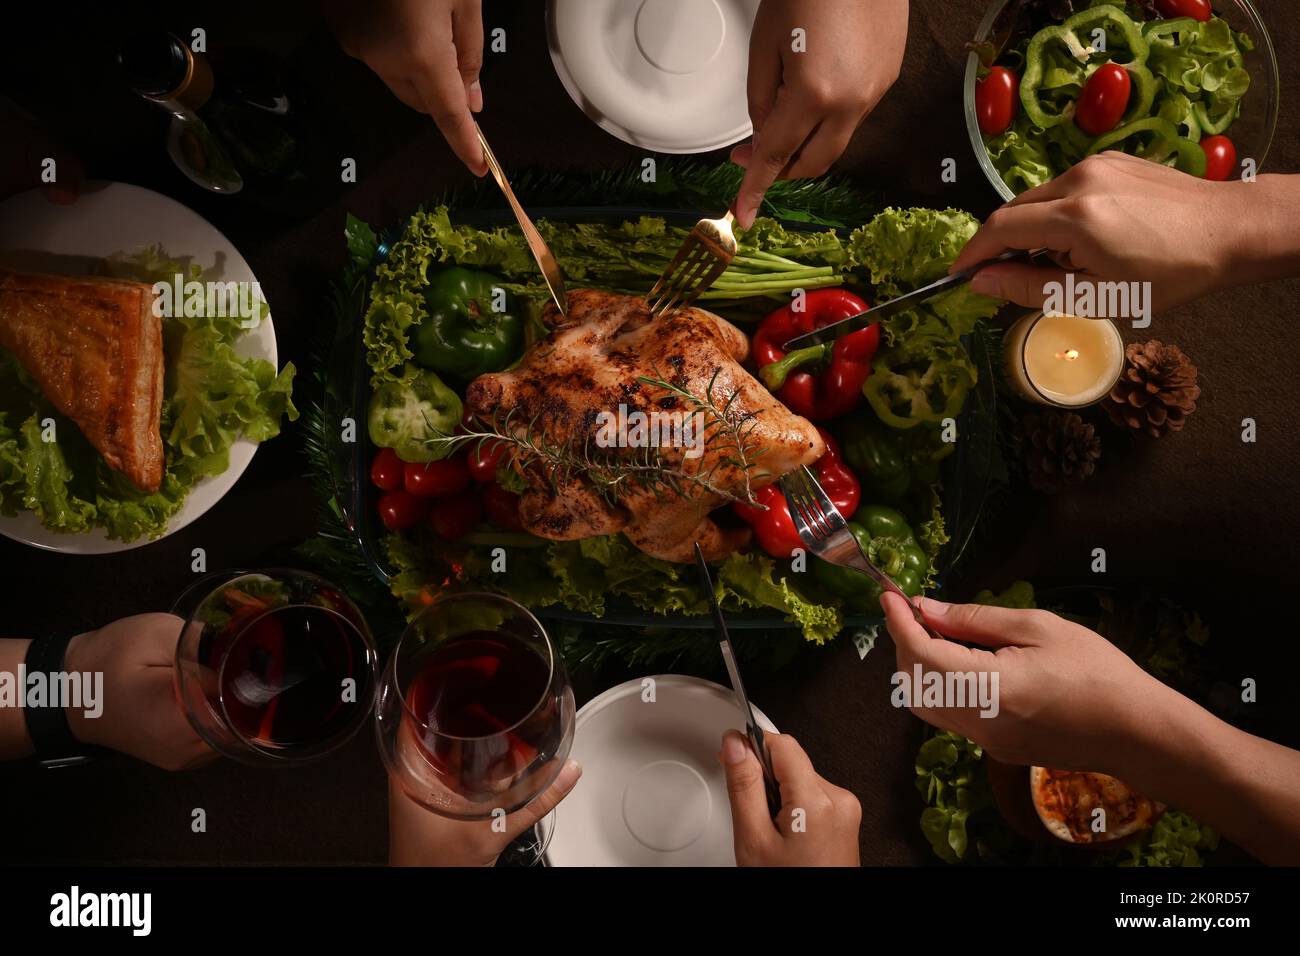 Dall'alto gruppo di amici o famiglia si godono mangiare tacchino arrosto, il giorno del Ringraziamento pasto insieme. Celebrazione, vacanze e Natale concetto Foto Stock